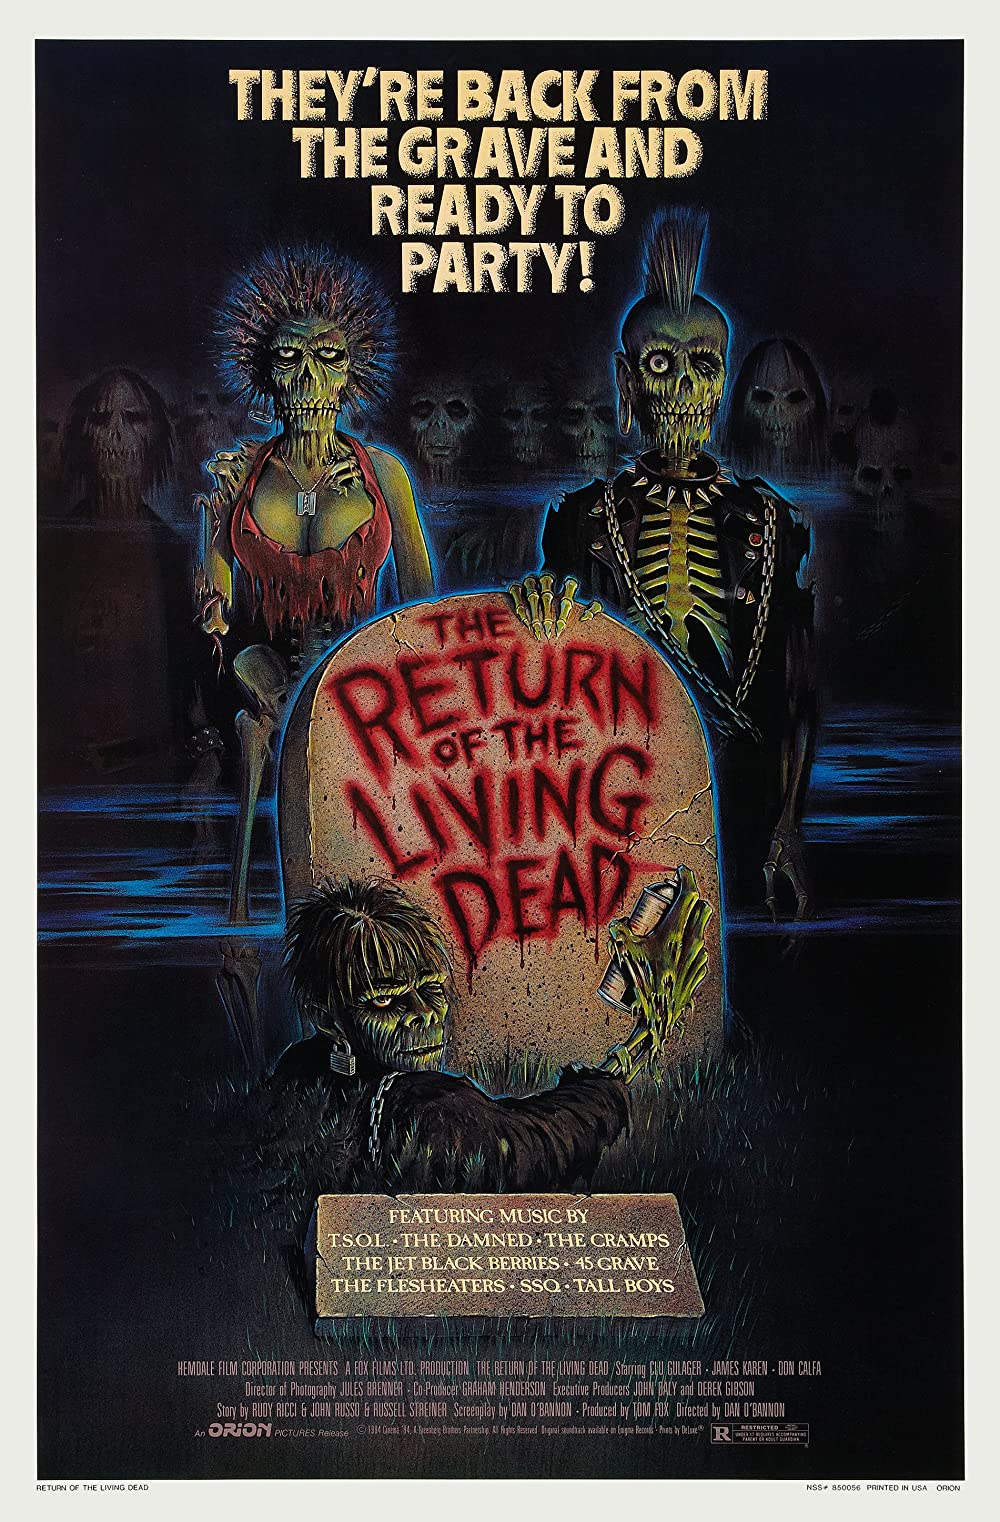 Filmbeschreibung zu The Return of the Living Dead